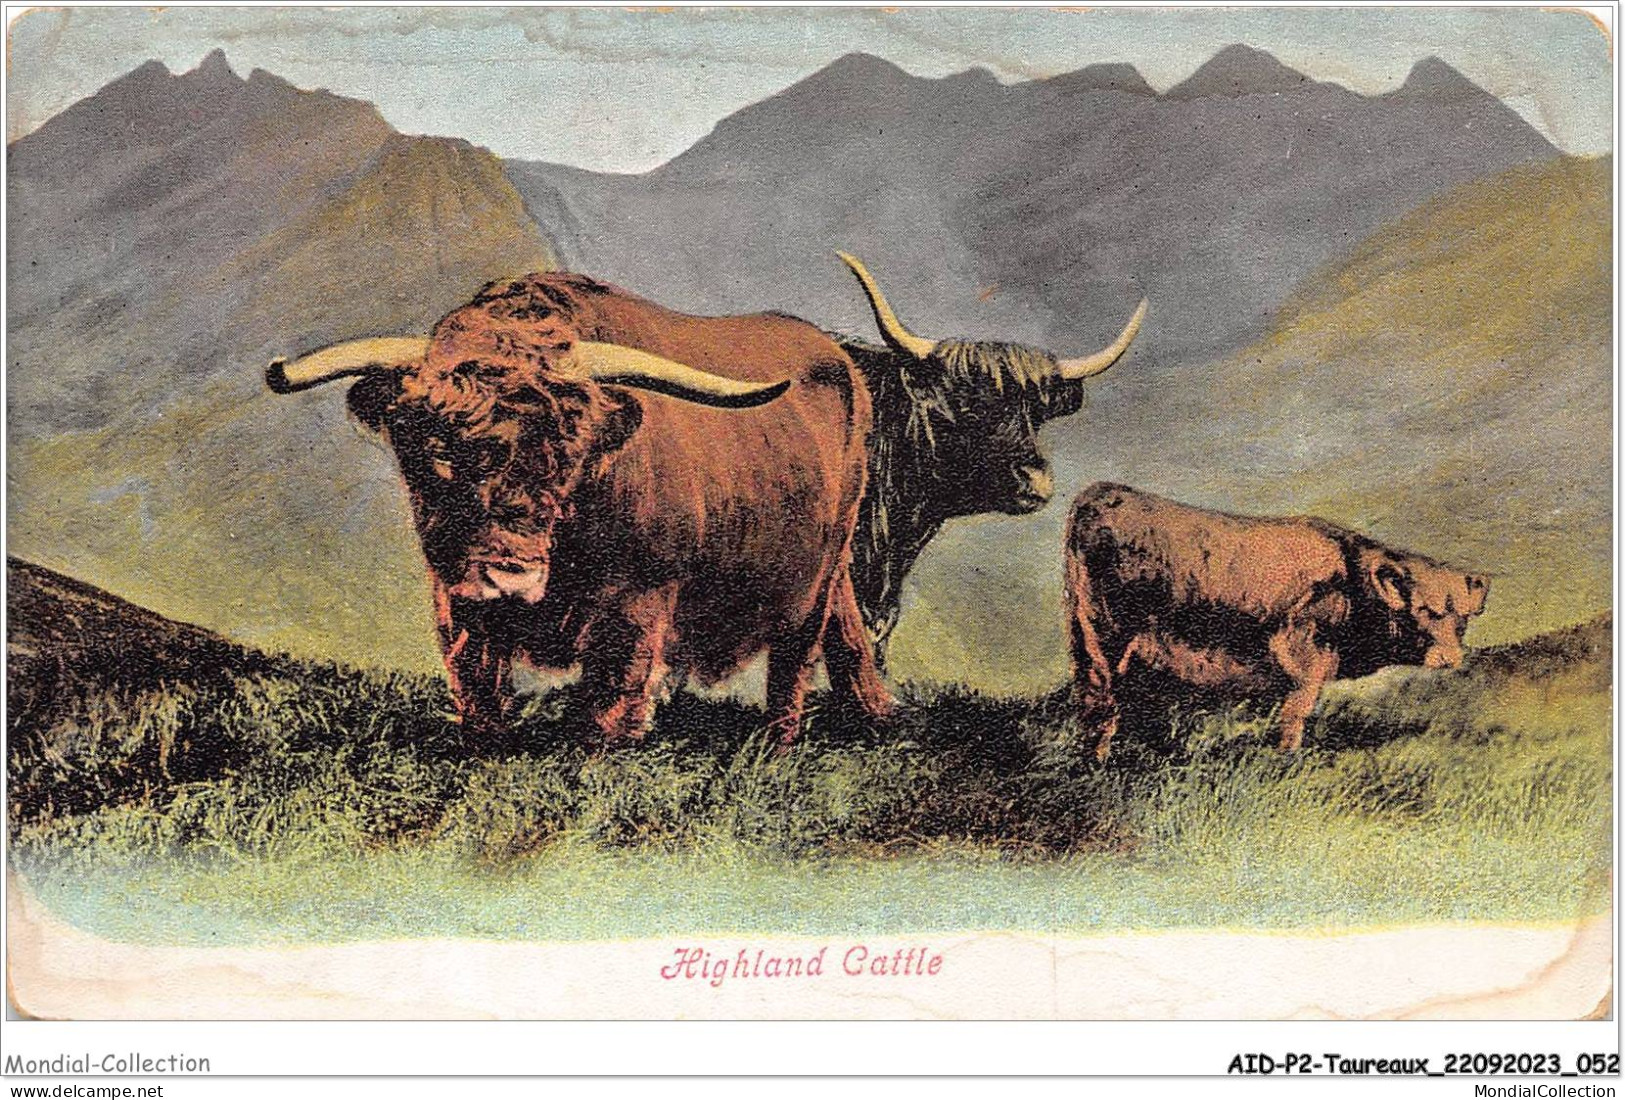 AIDP2-TAUREAUX-0100 - Highland Cattle  - Stiere